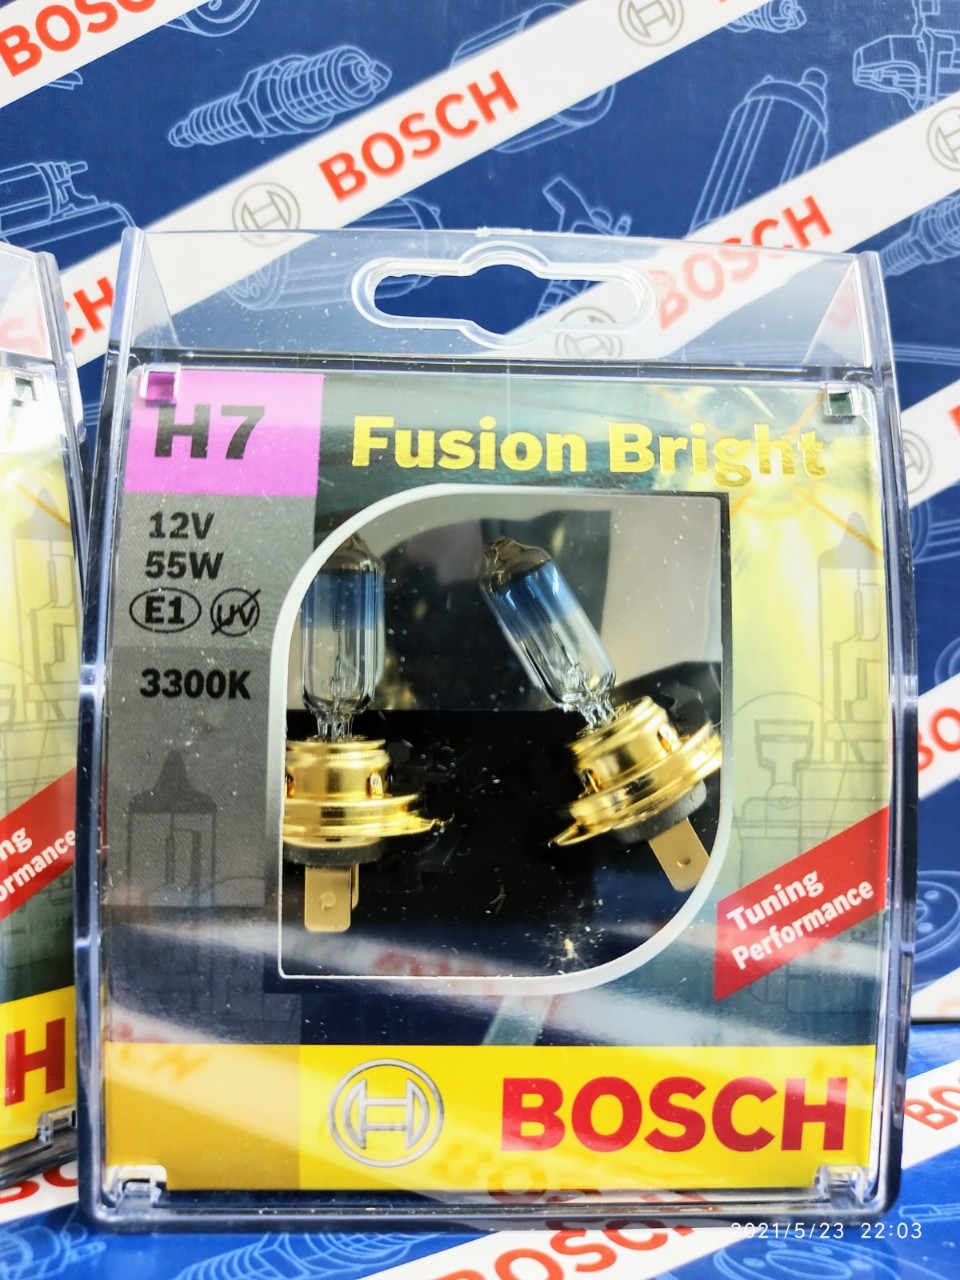 Bóng Đèn Tăng Sáng Bosch H7 12V 55W Plus +90% (Vỉ 1 Bóng)